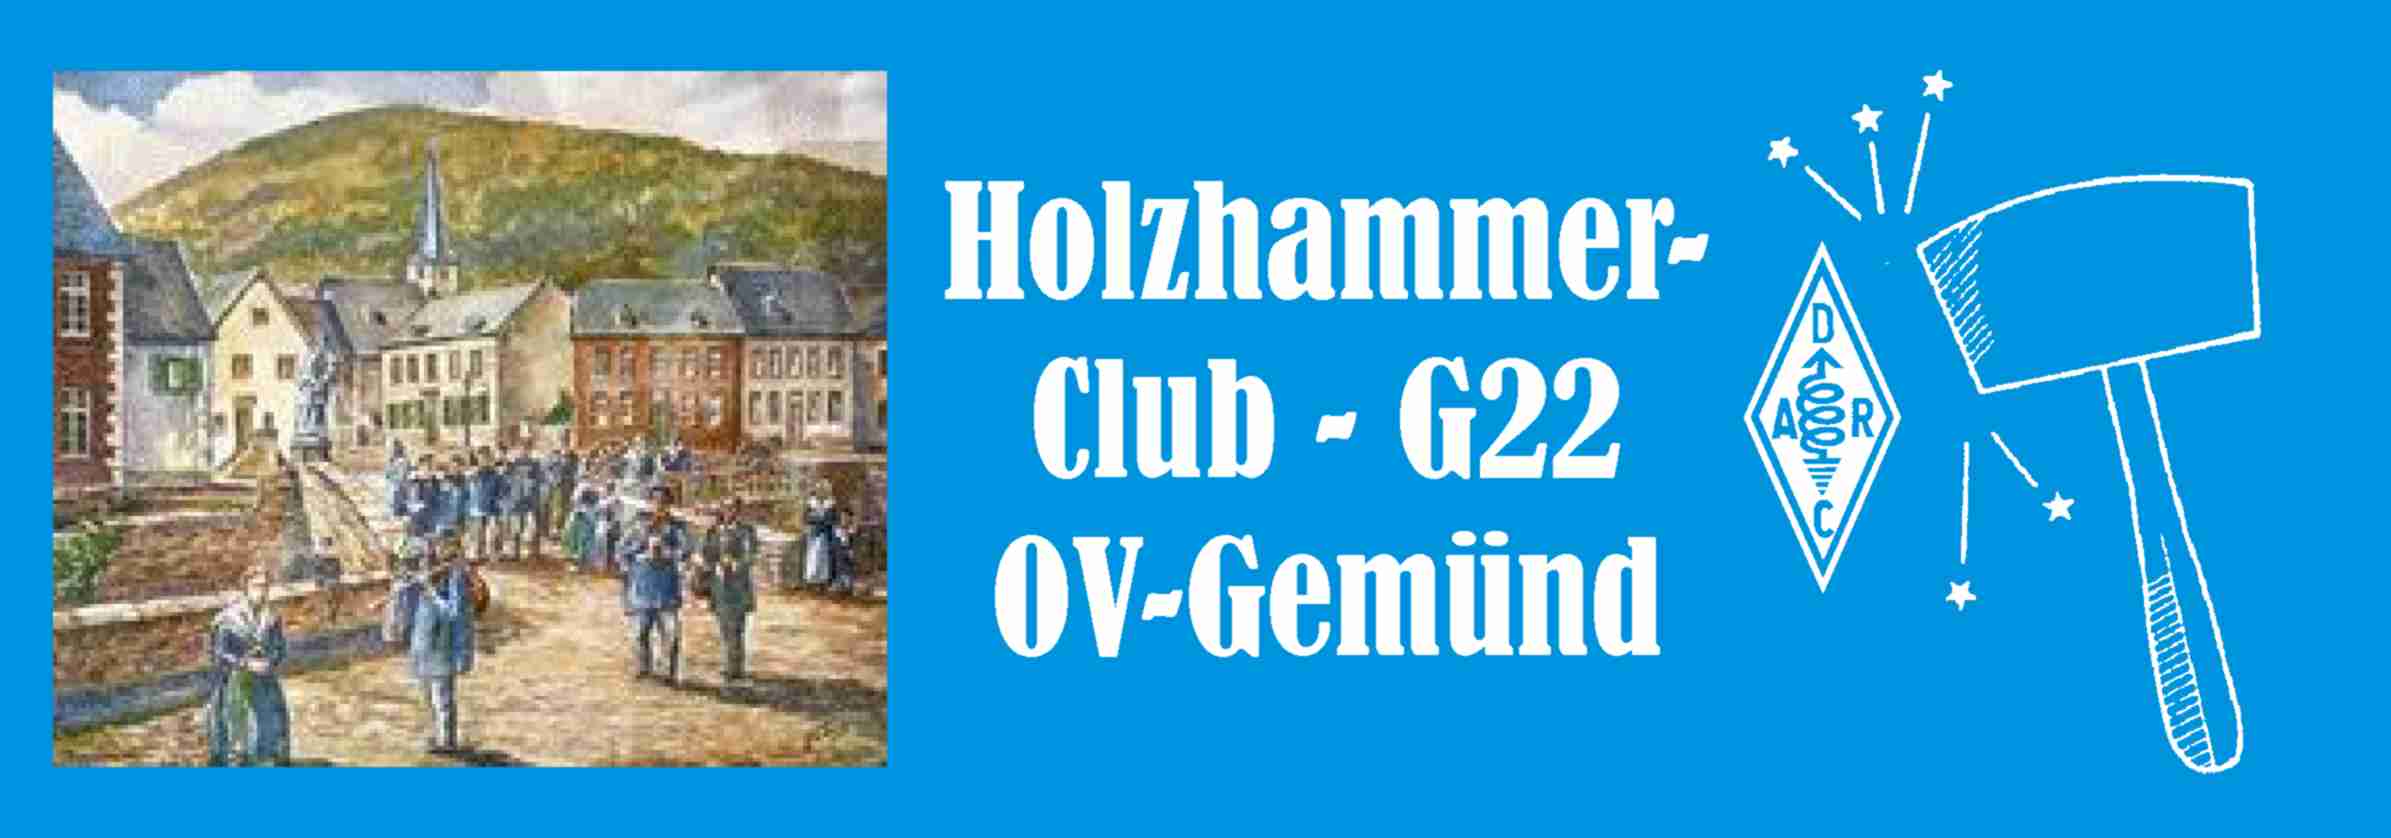 Holzhammerclub